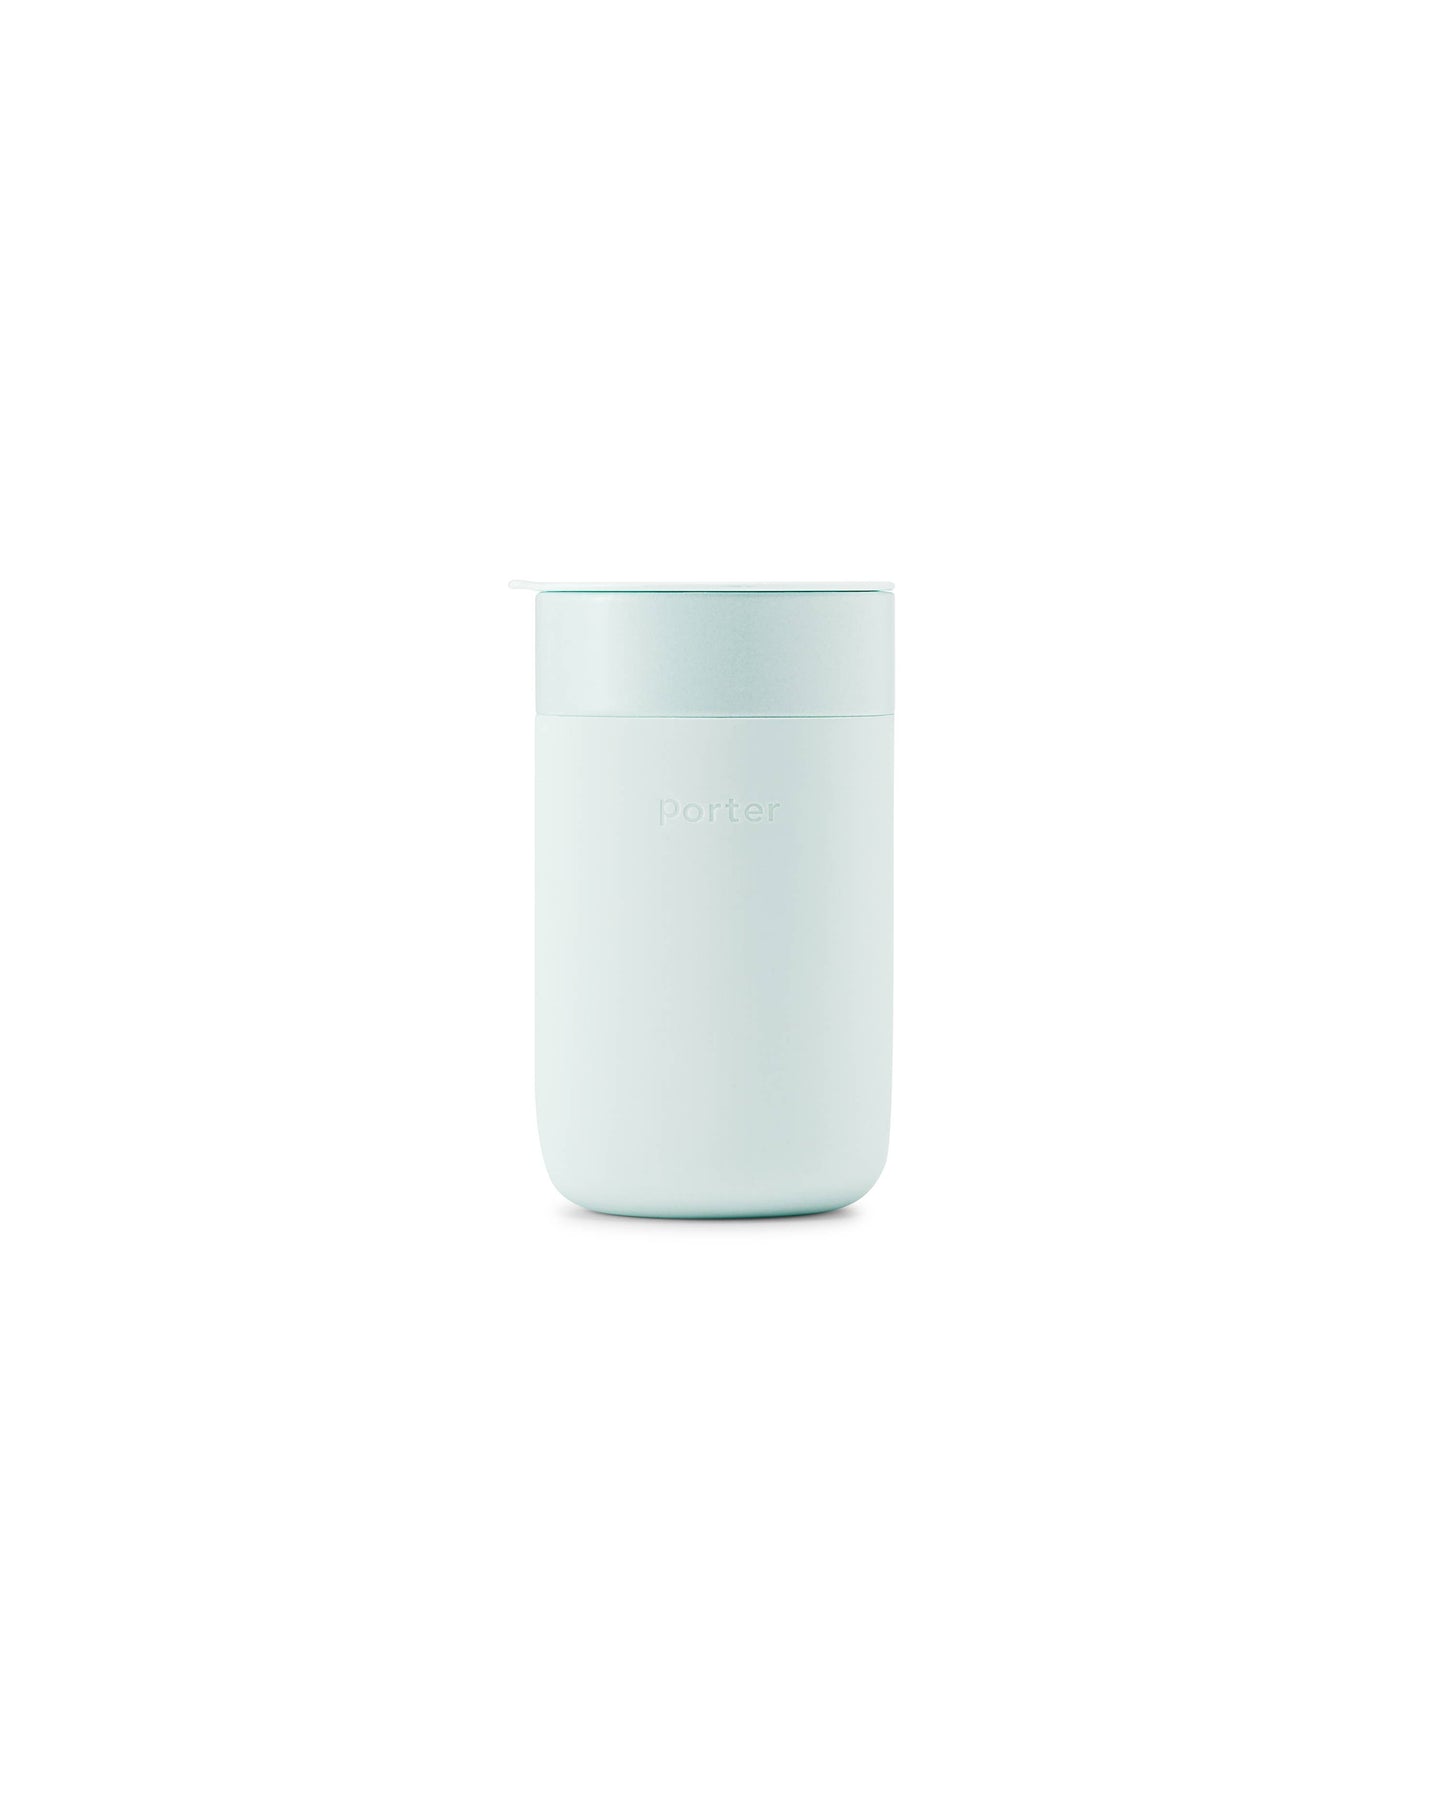 Porter Ceramic Reusable Coffee Mug 16oz: Charcoal